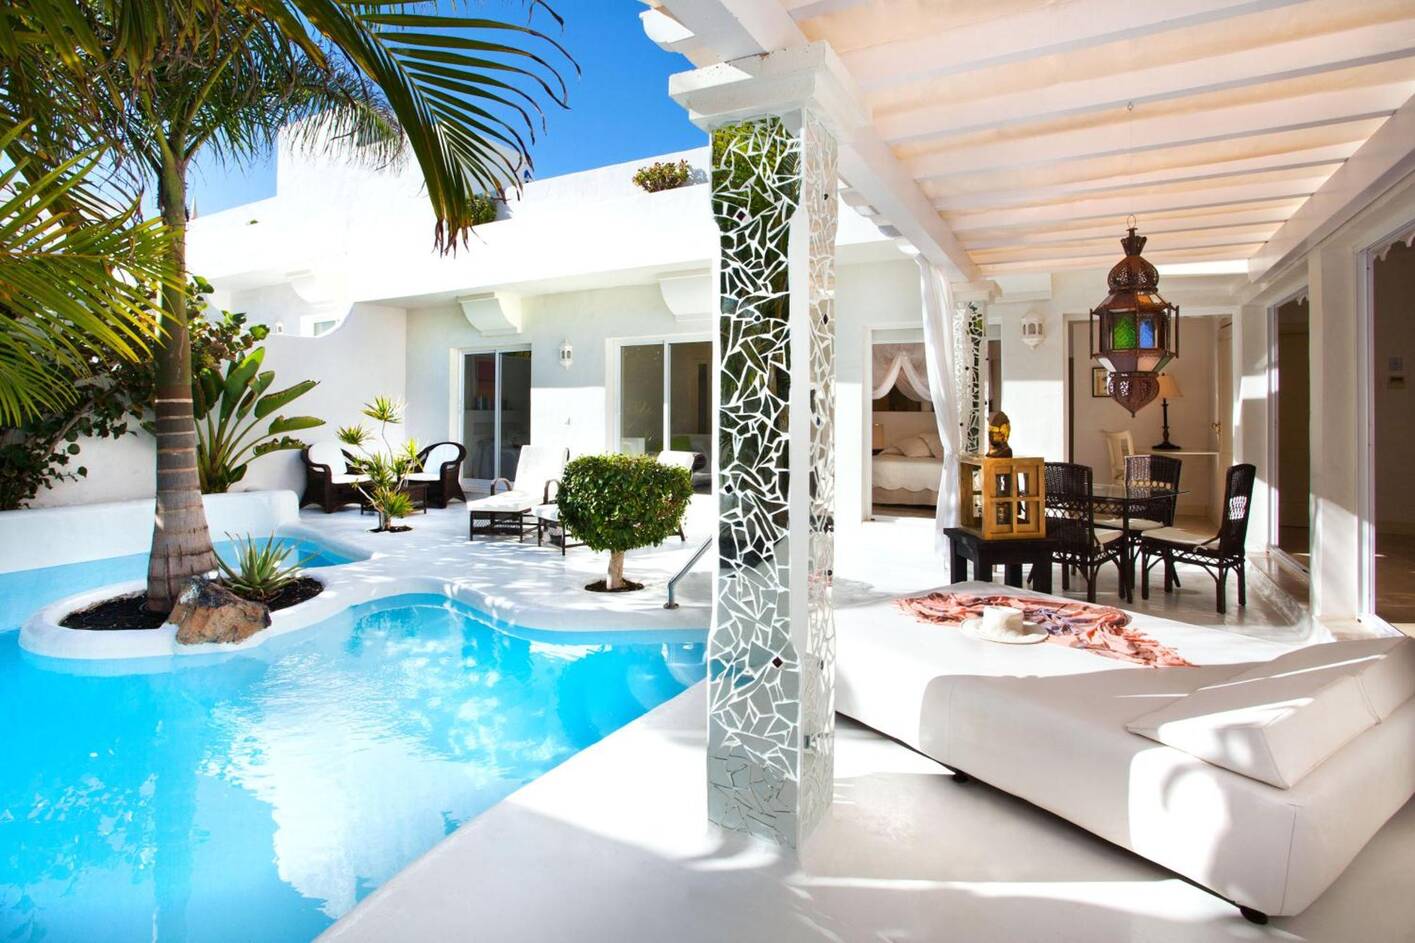 KATIS Villas Boutique Fuerteventura, unas villas en Corralejo baratas que puedes alquilar